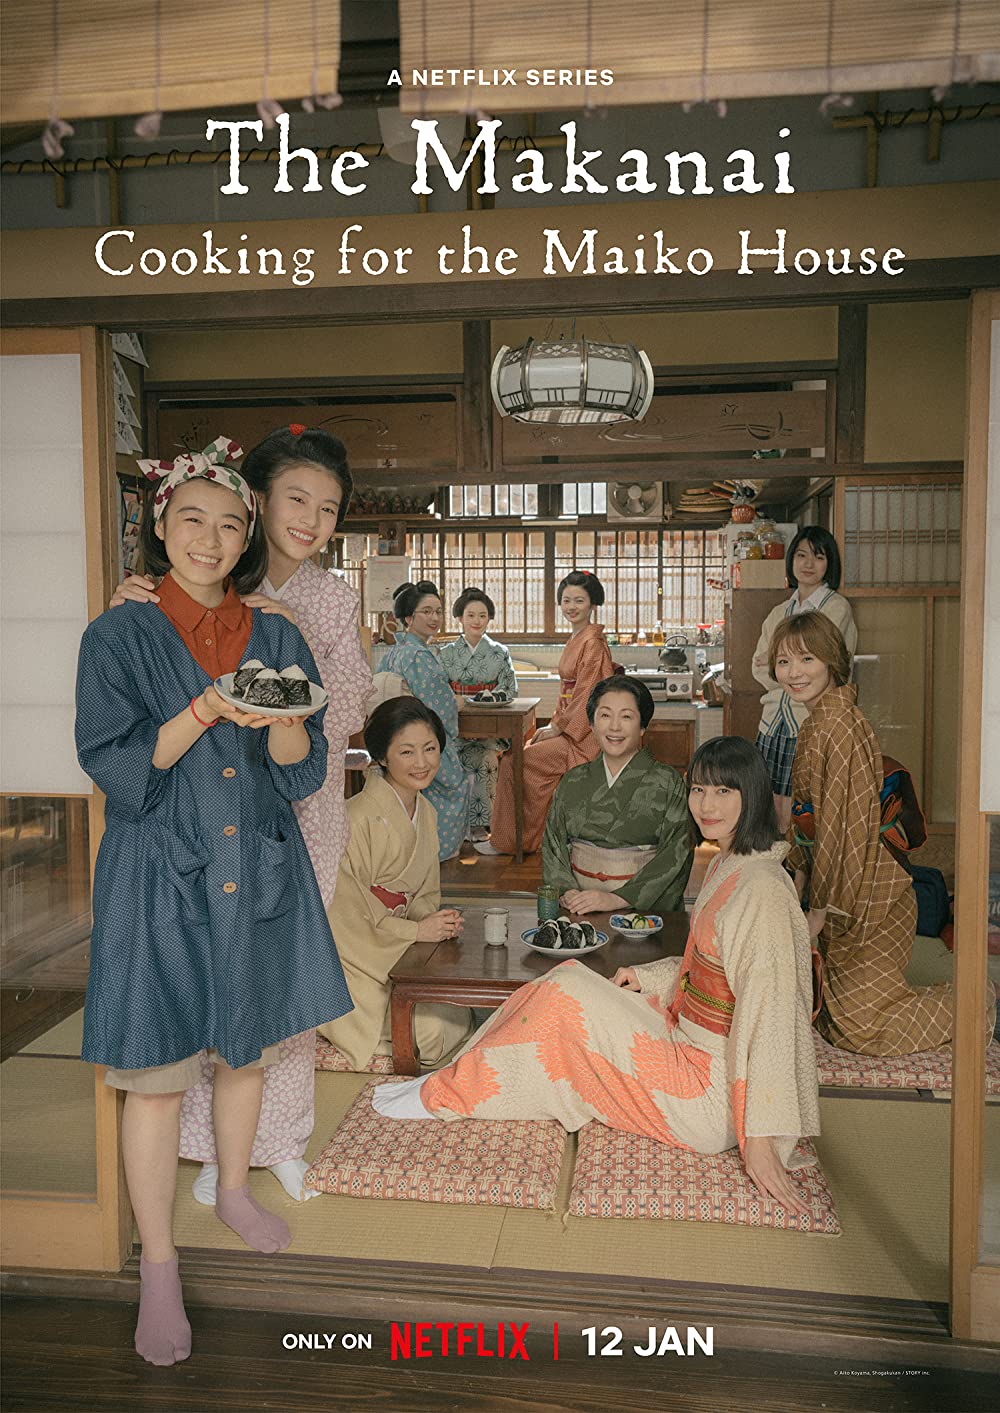 koreeda-the-makanai-posterthe-makanai-cooking-for-the-maiko-house-poster